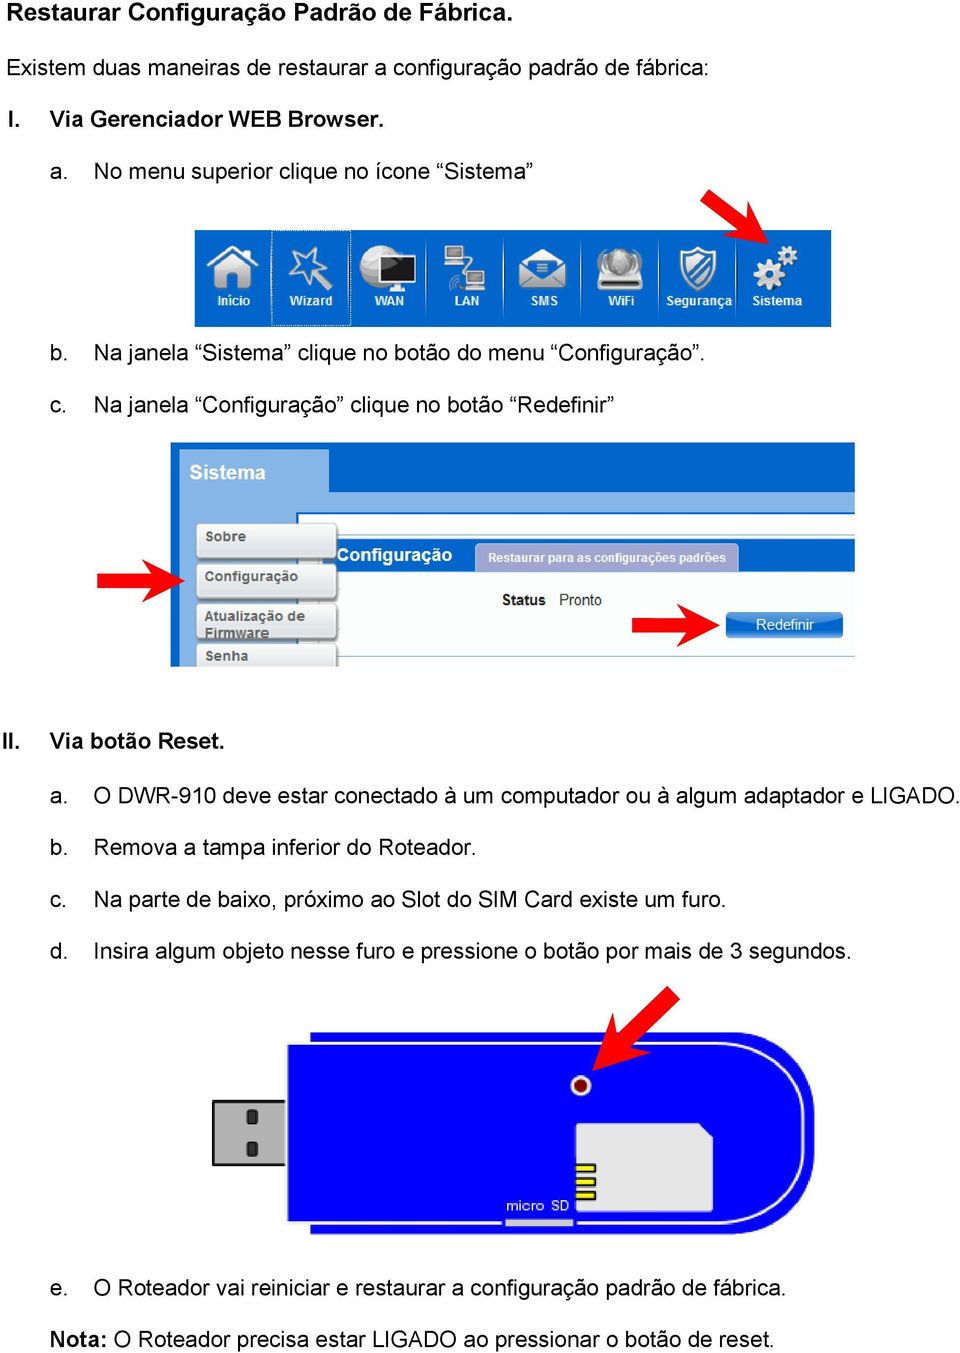 O DWR-910 deve estar conectado à um computador ou à algum adaptador e LIGADO. b. Remova a tampa inferior do Roteador. c. Na parte de baixo, próximo ao Slot do SIM Card existe um furo.